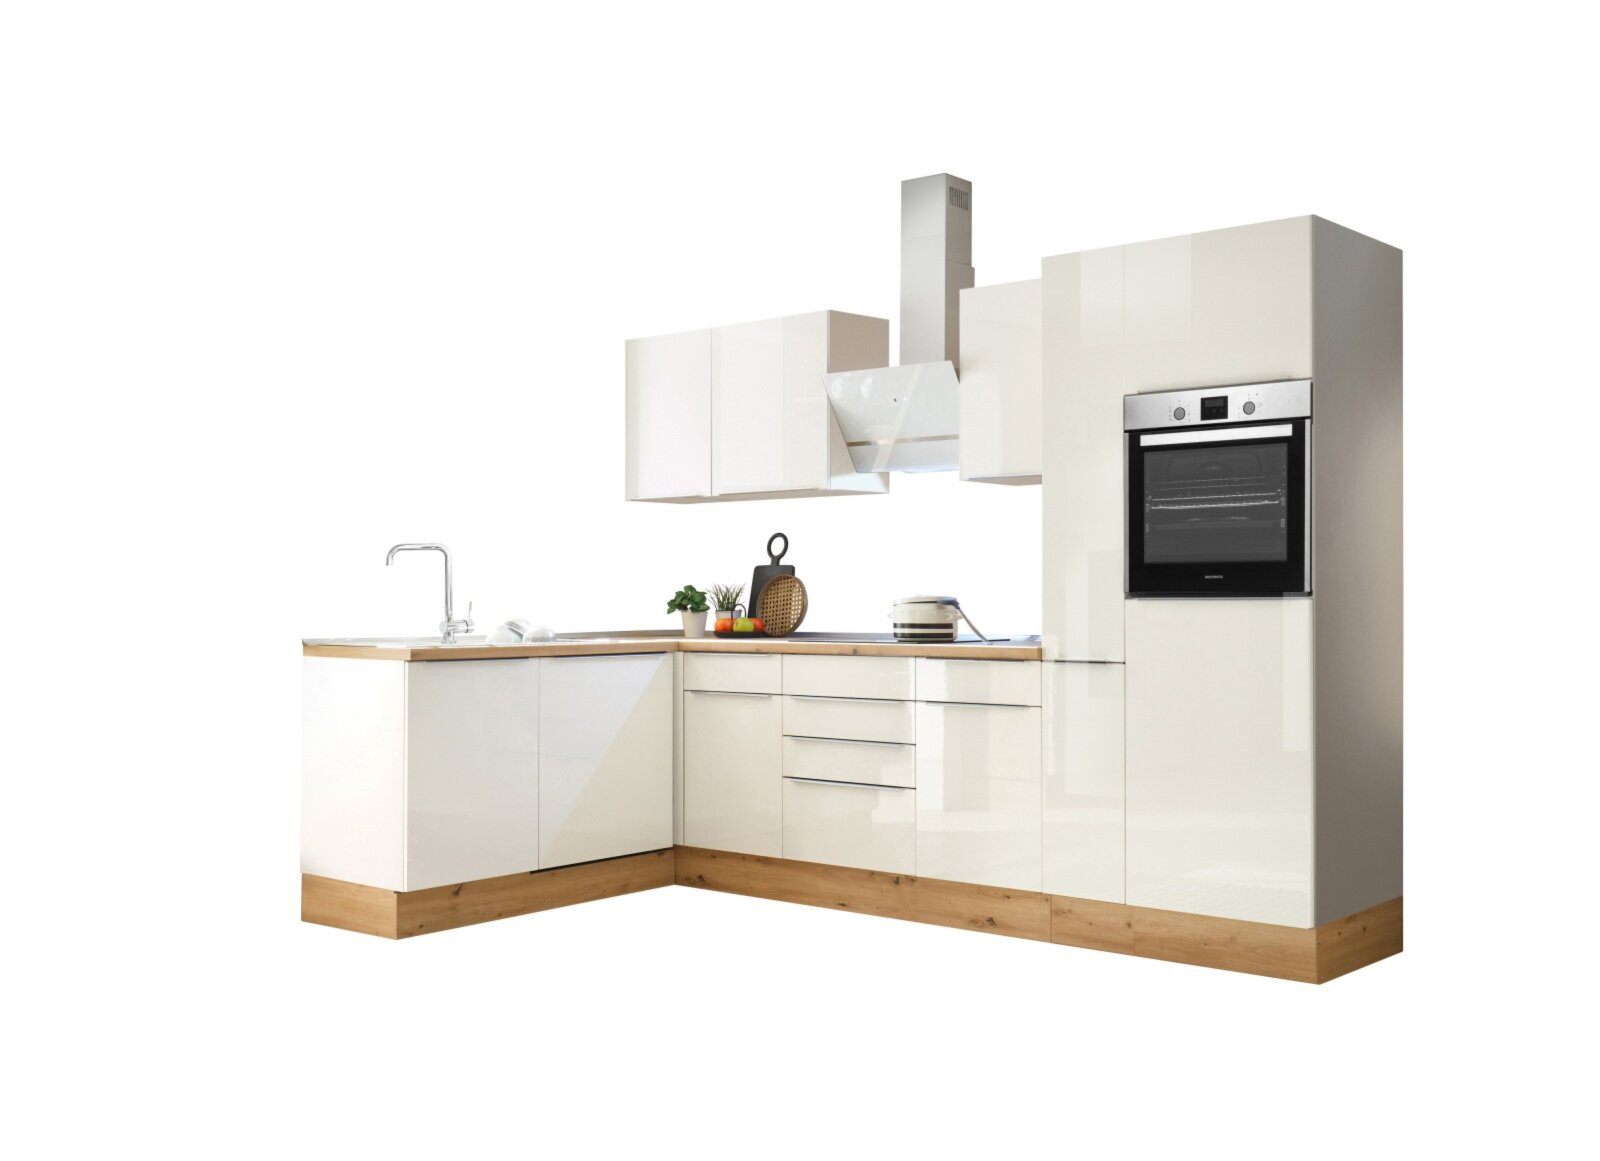 RESPEKTA Winkelküche - Artisan Eiche - weiß - mit E-Geräten - 310 cm |  Online bei ROLLER kaufen